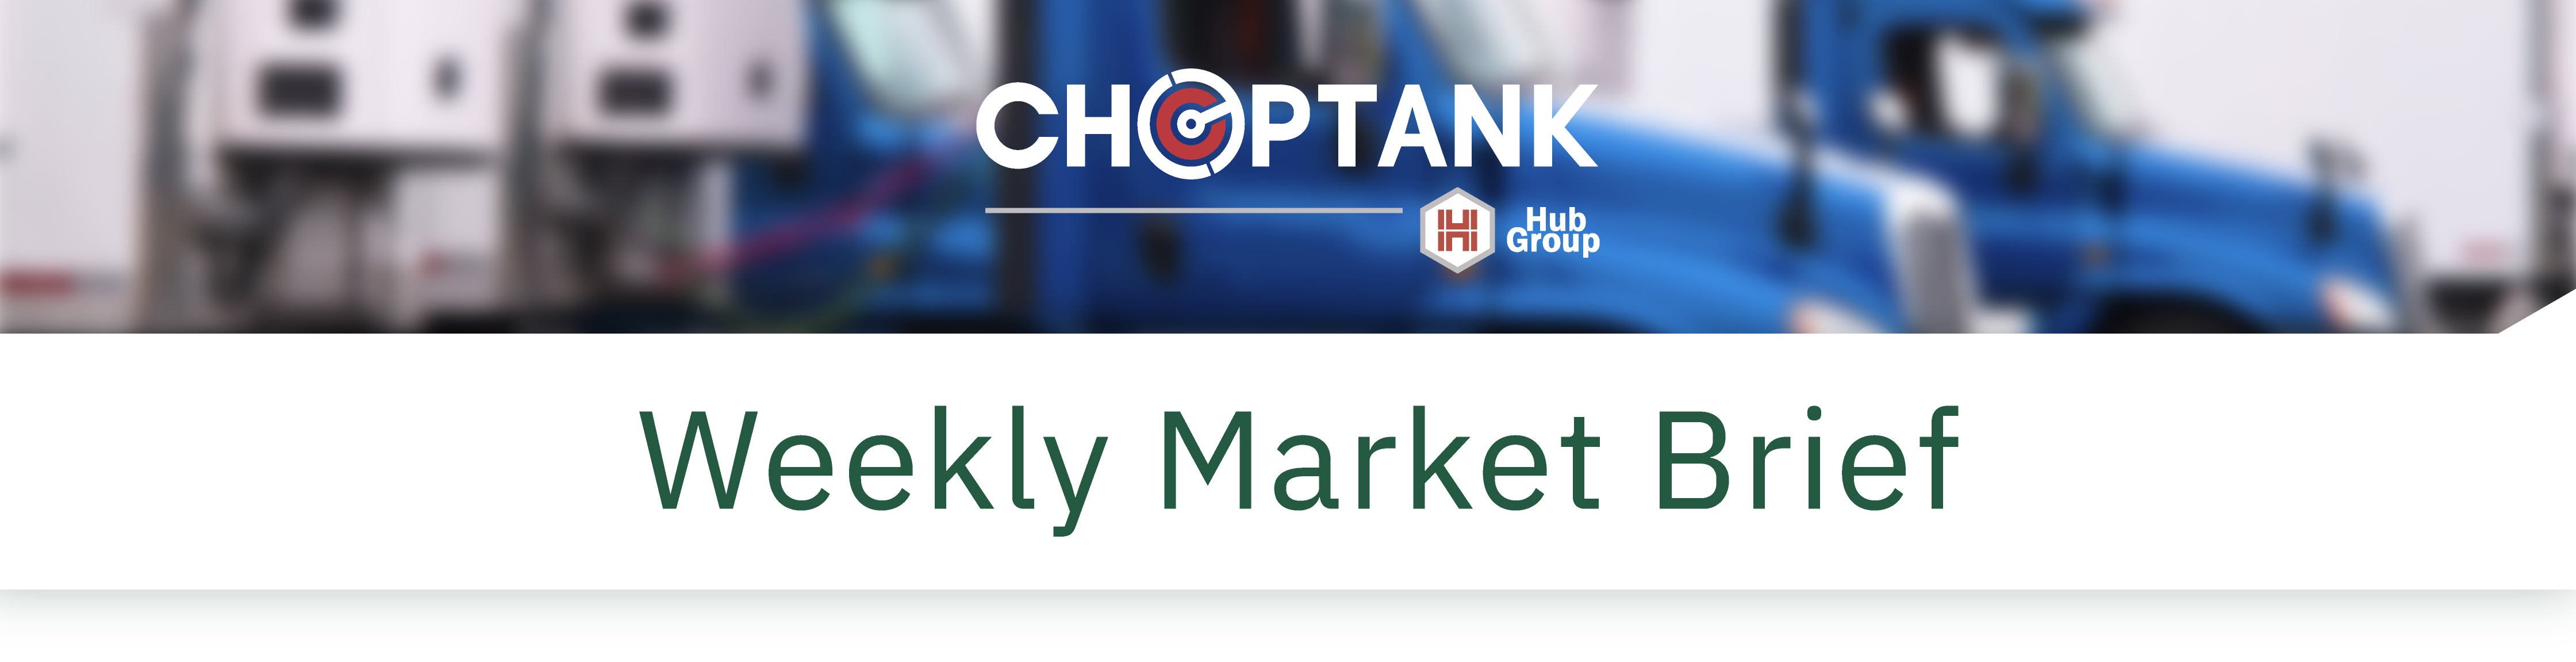 header_Weekly Market Brief_Choptank@2x